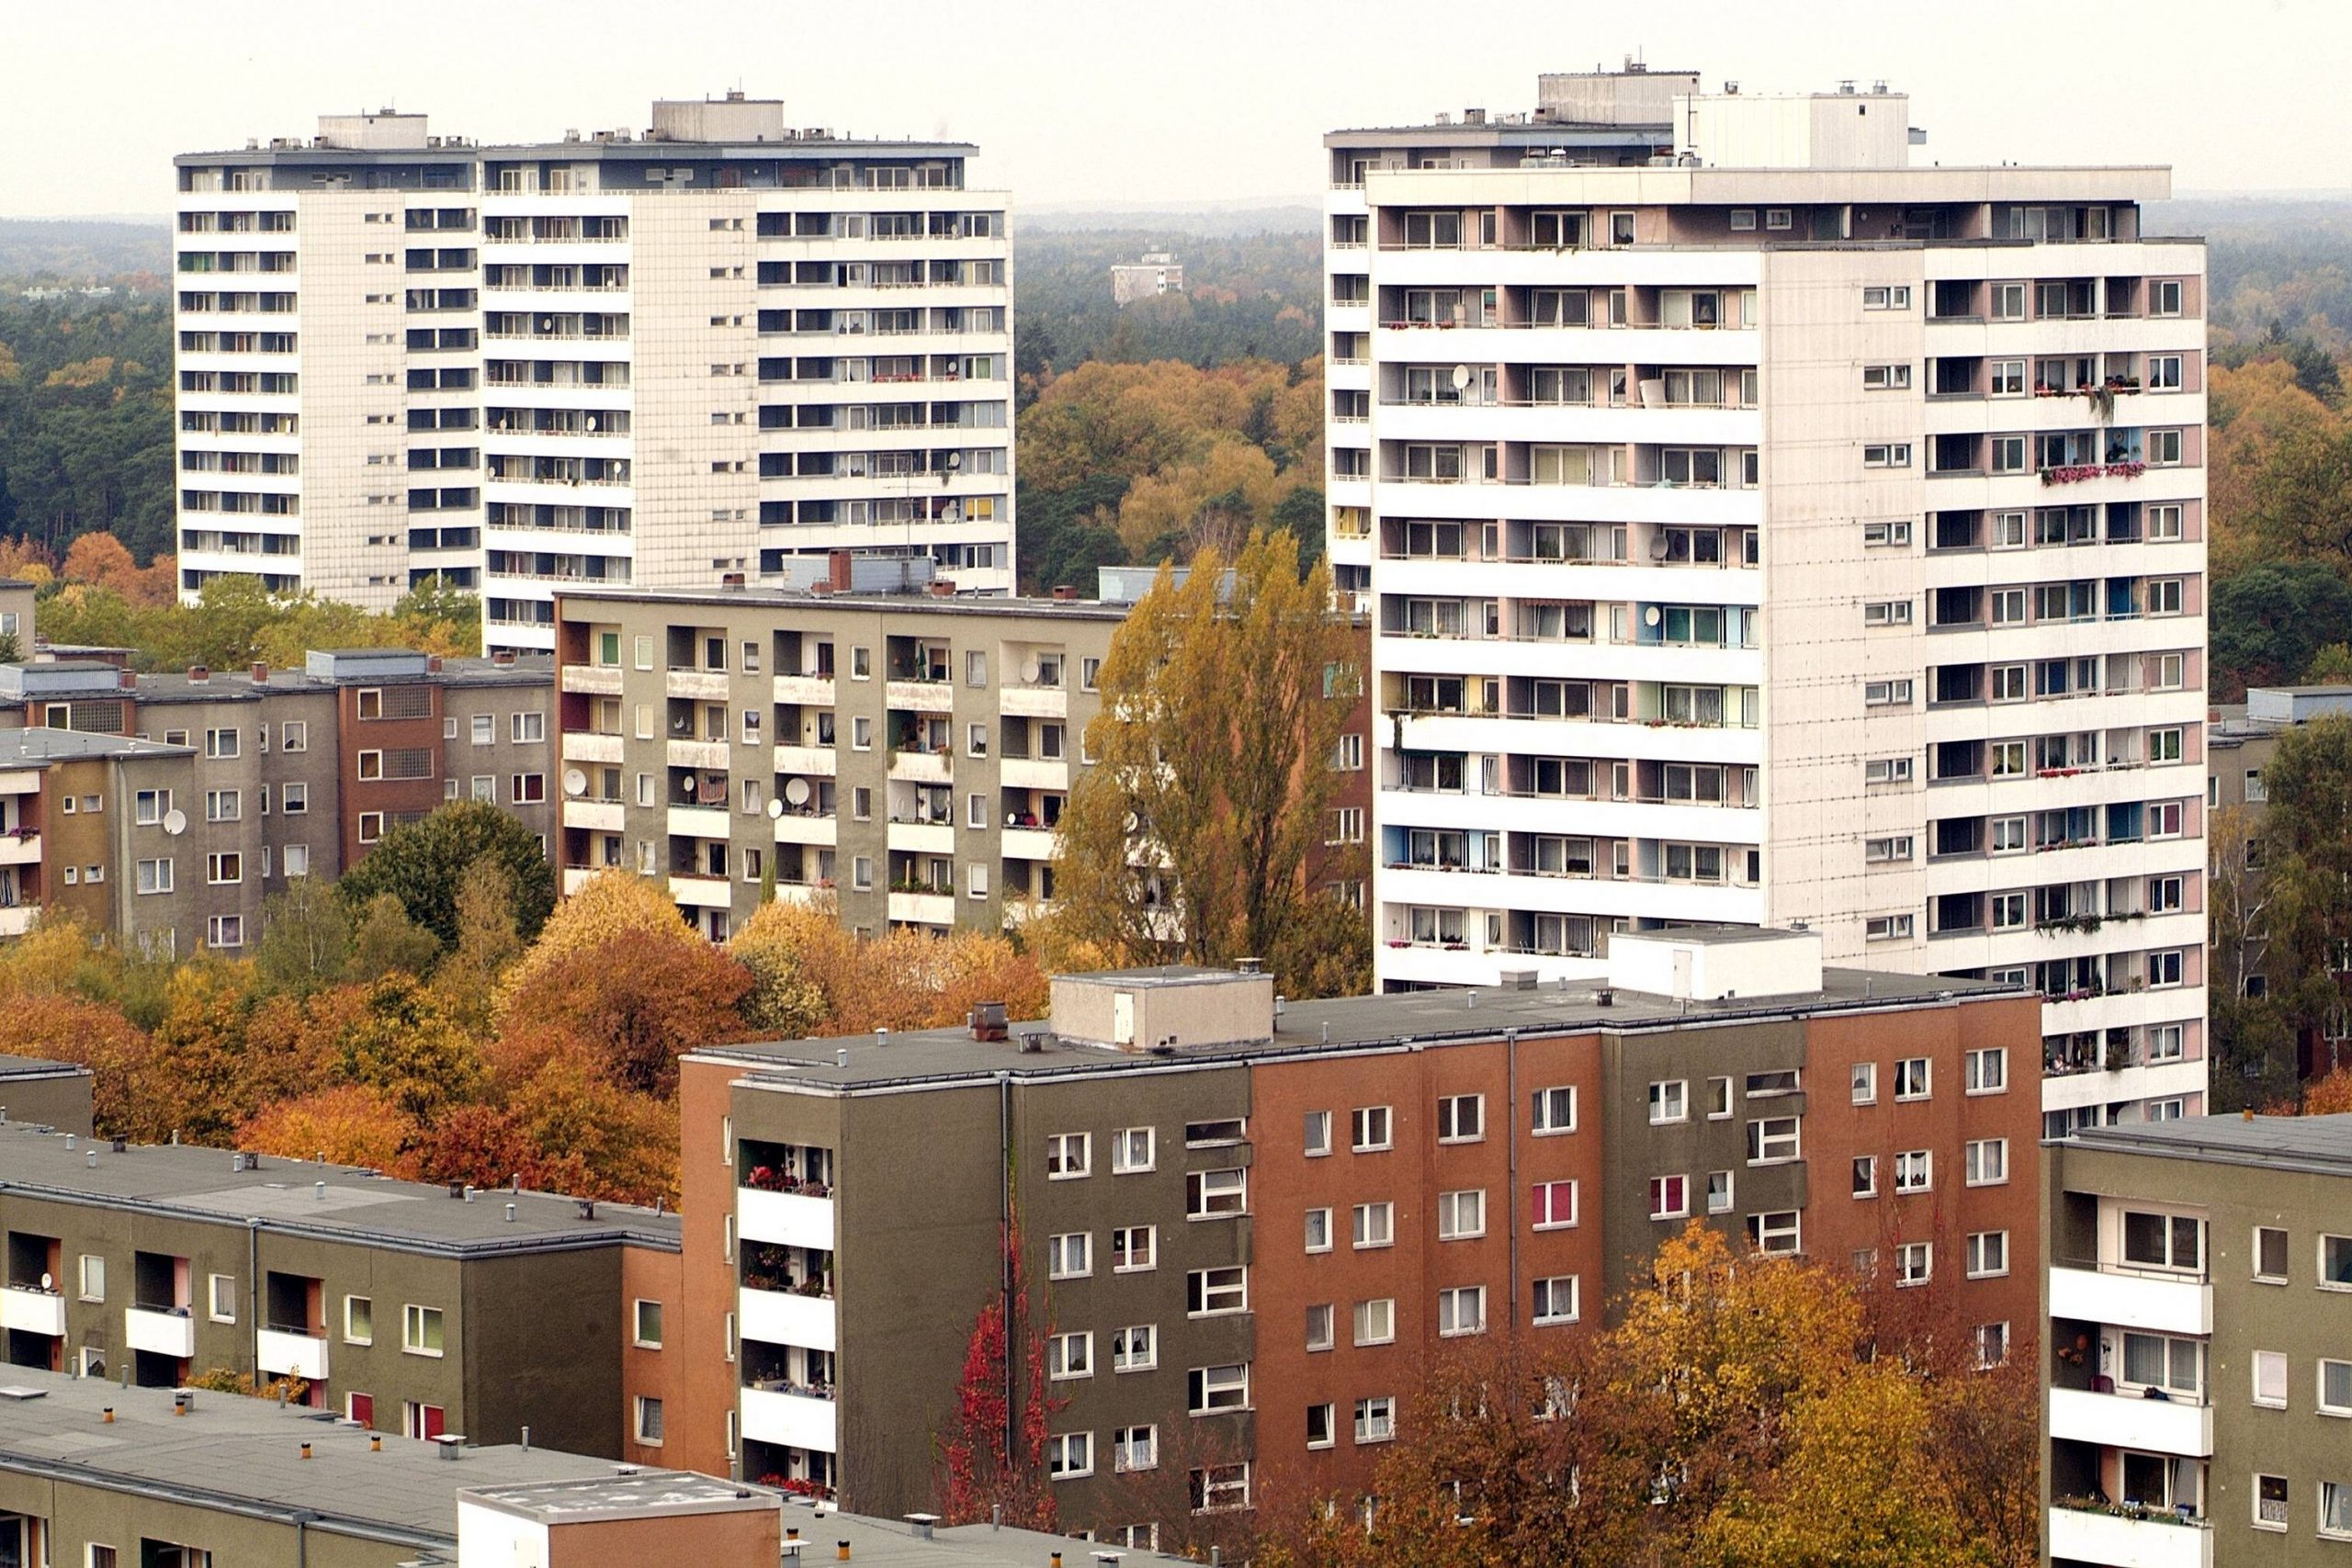 Großwohnsiedlungen in Berlin: Das Falkenhagener Feld befand sich von der 1960er Jahren bis in die 1990er Jahre im Bau. 